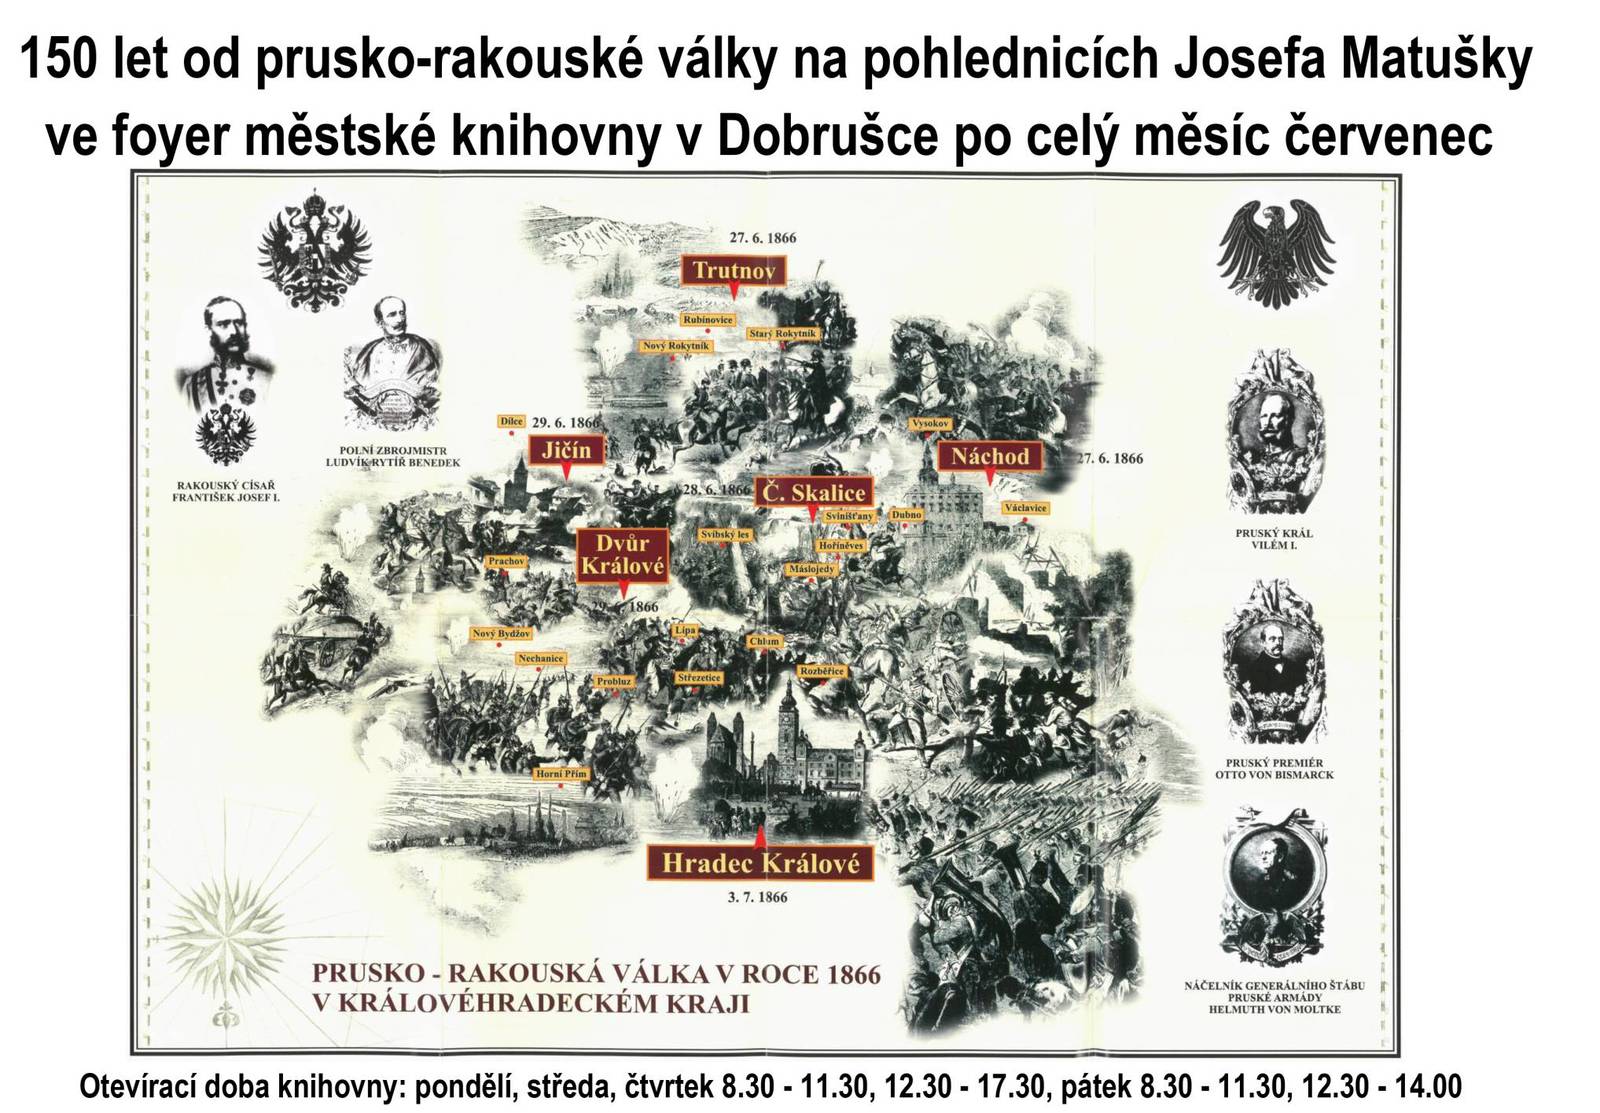 150 let od prusko-rakouské války na pohlednicích Josefa Matušky